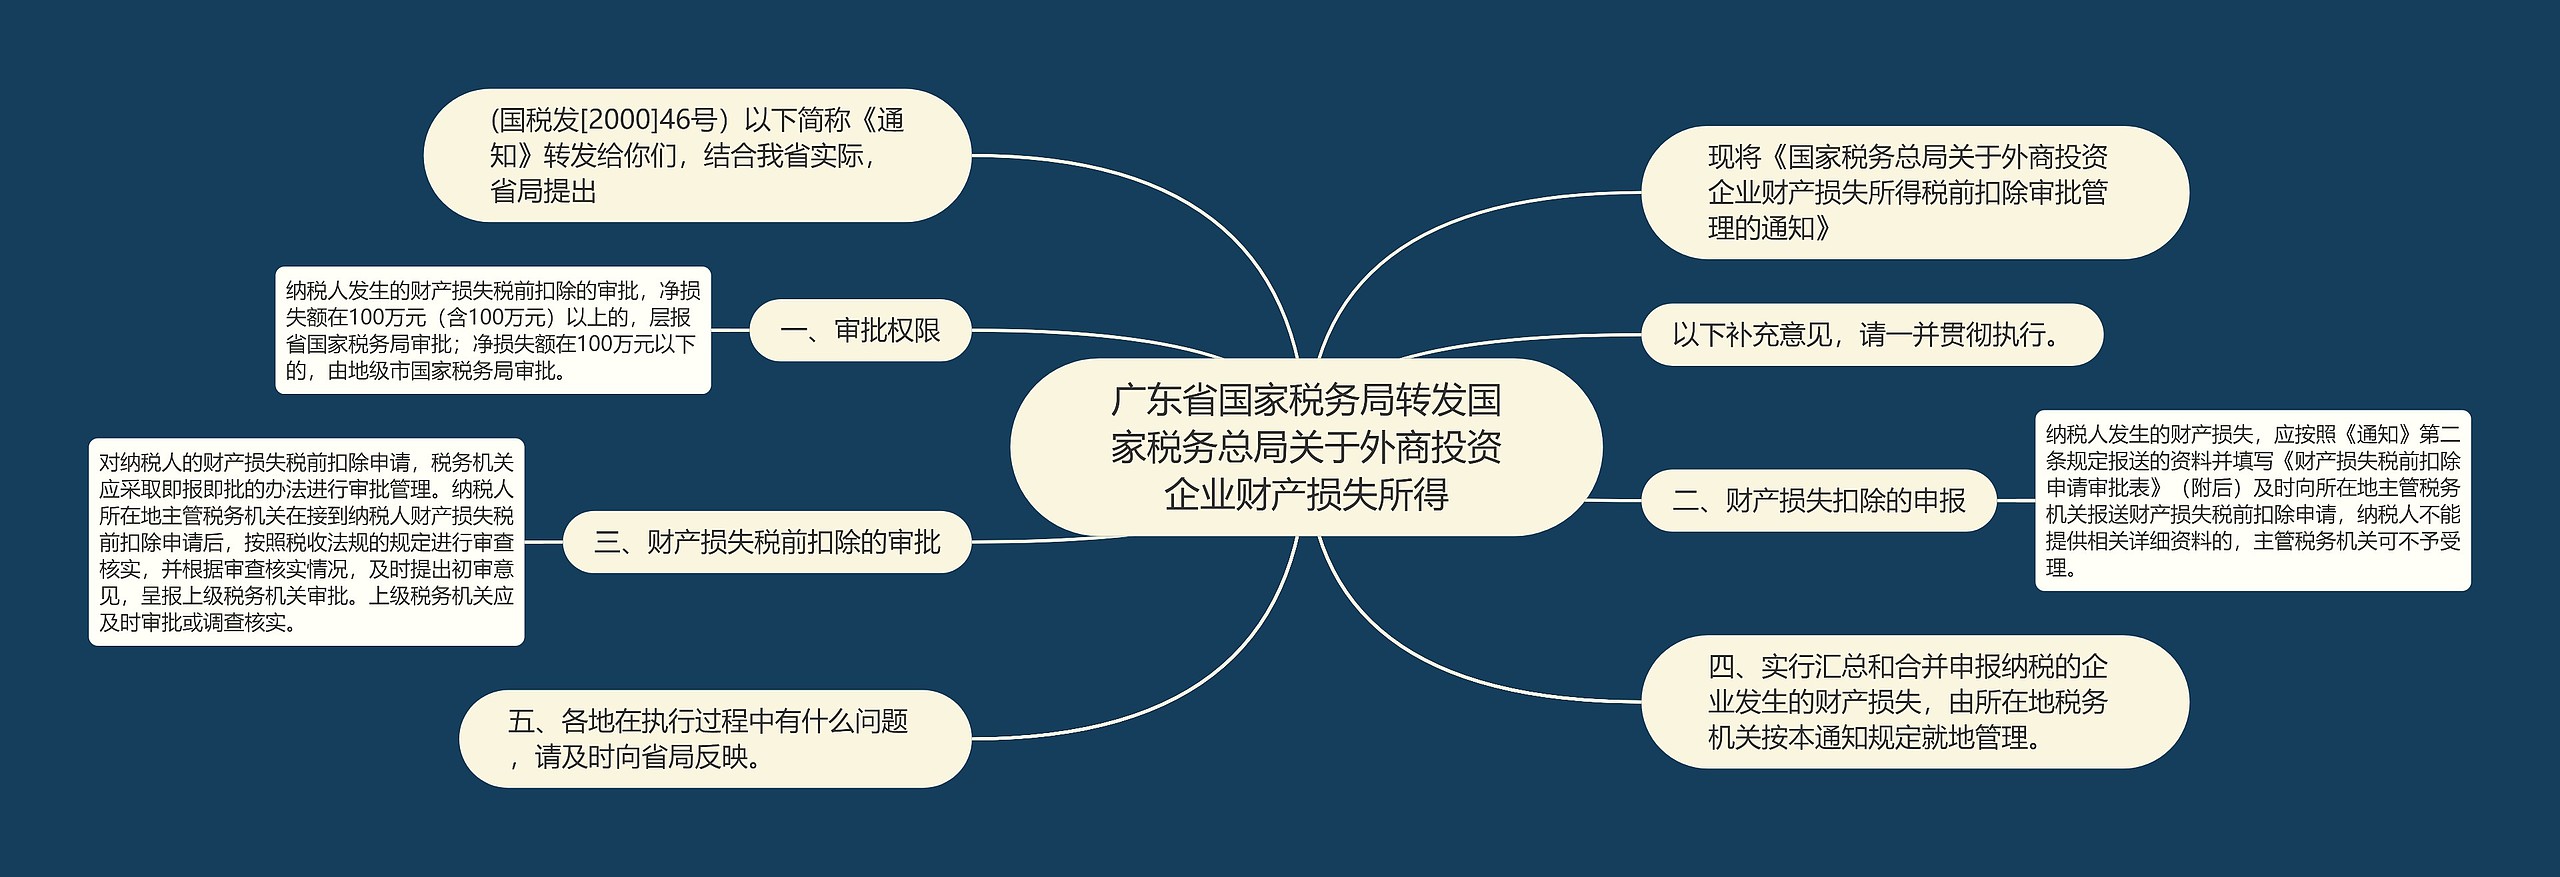 广东省国家税务局转发国家税务总局关于外商投资企业财产损失所得